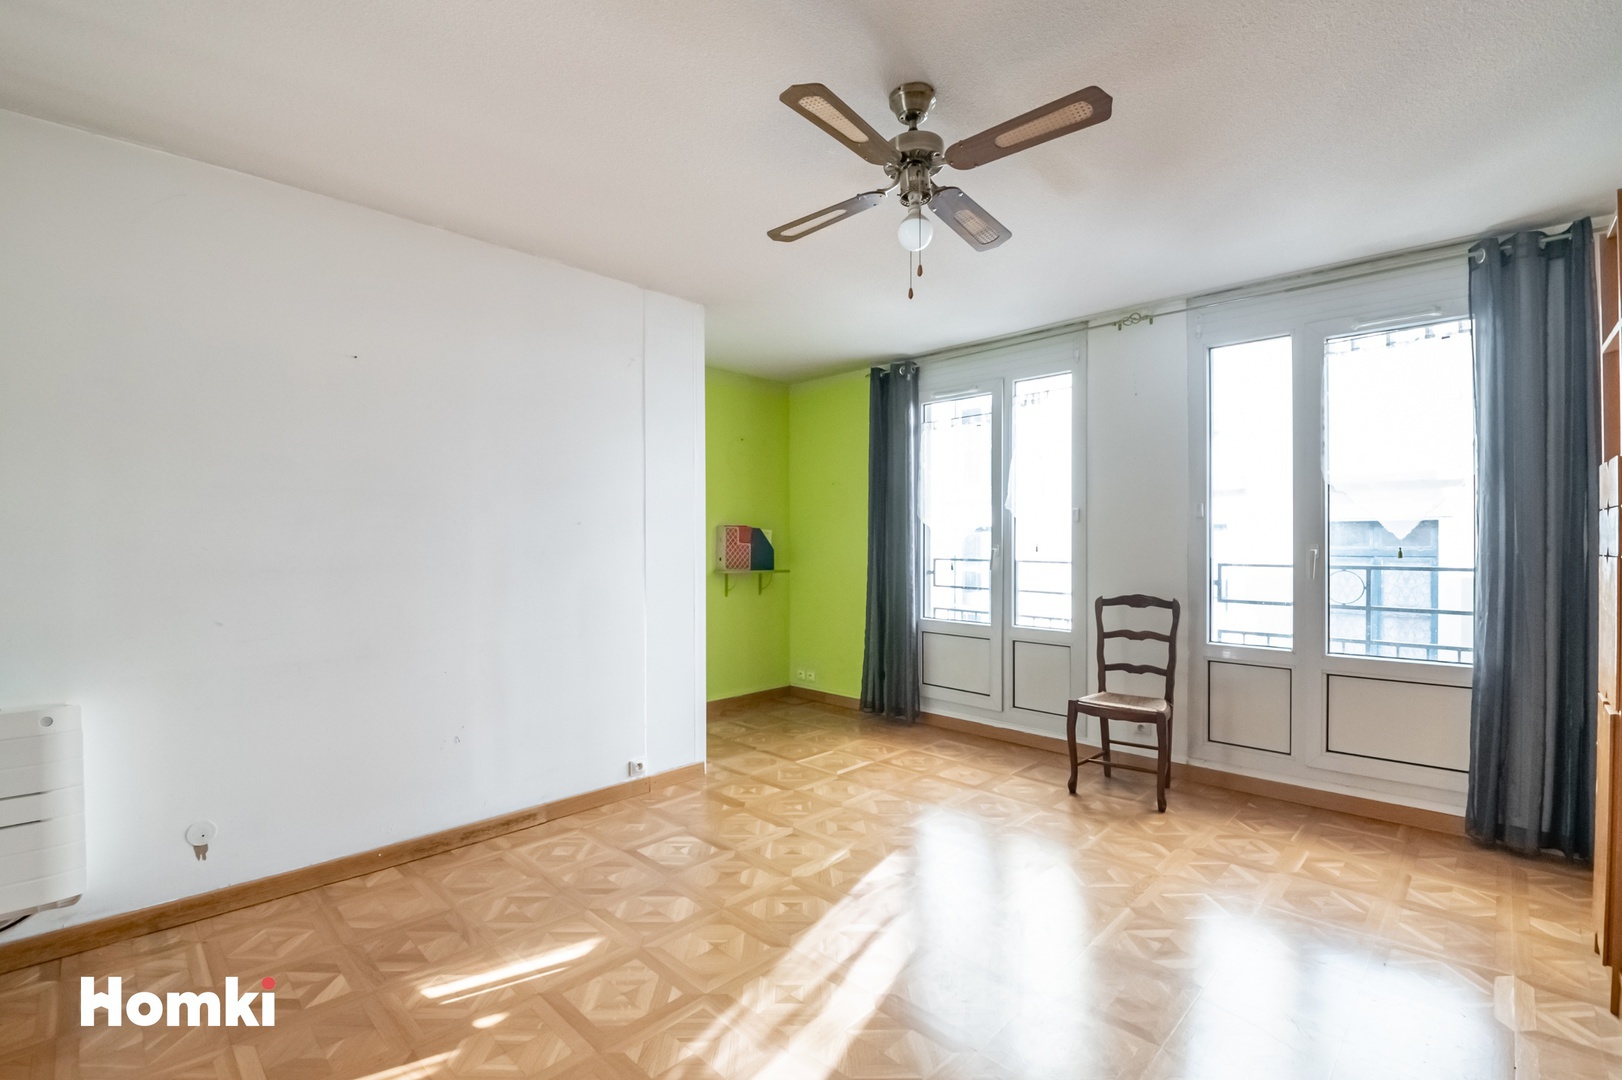 Homki - Vente Appartement  de 53.0 m² à Grenoble 38000